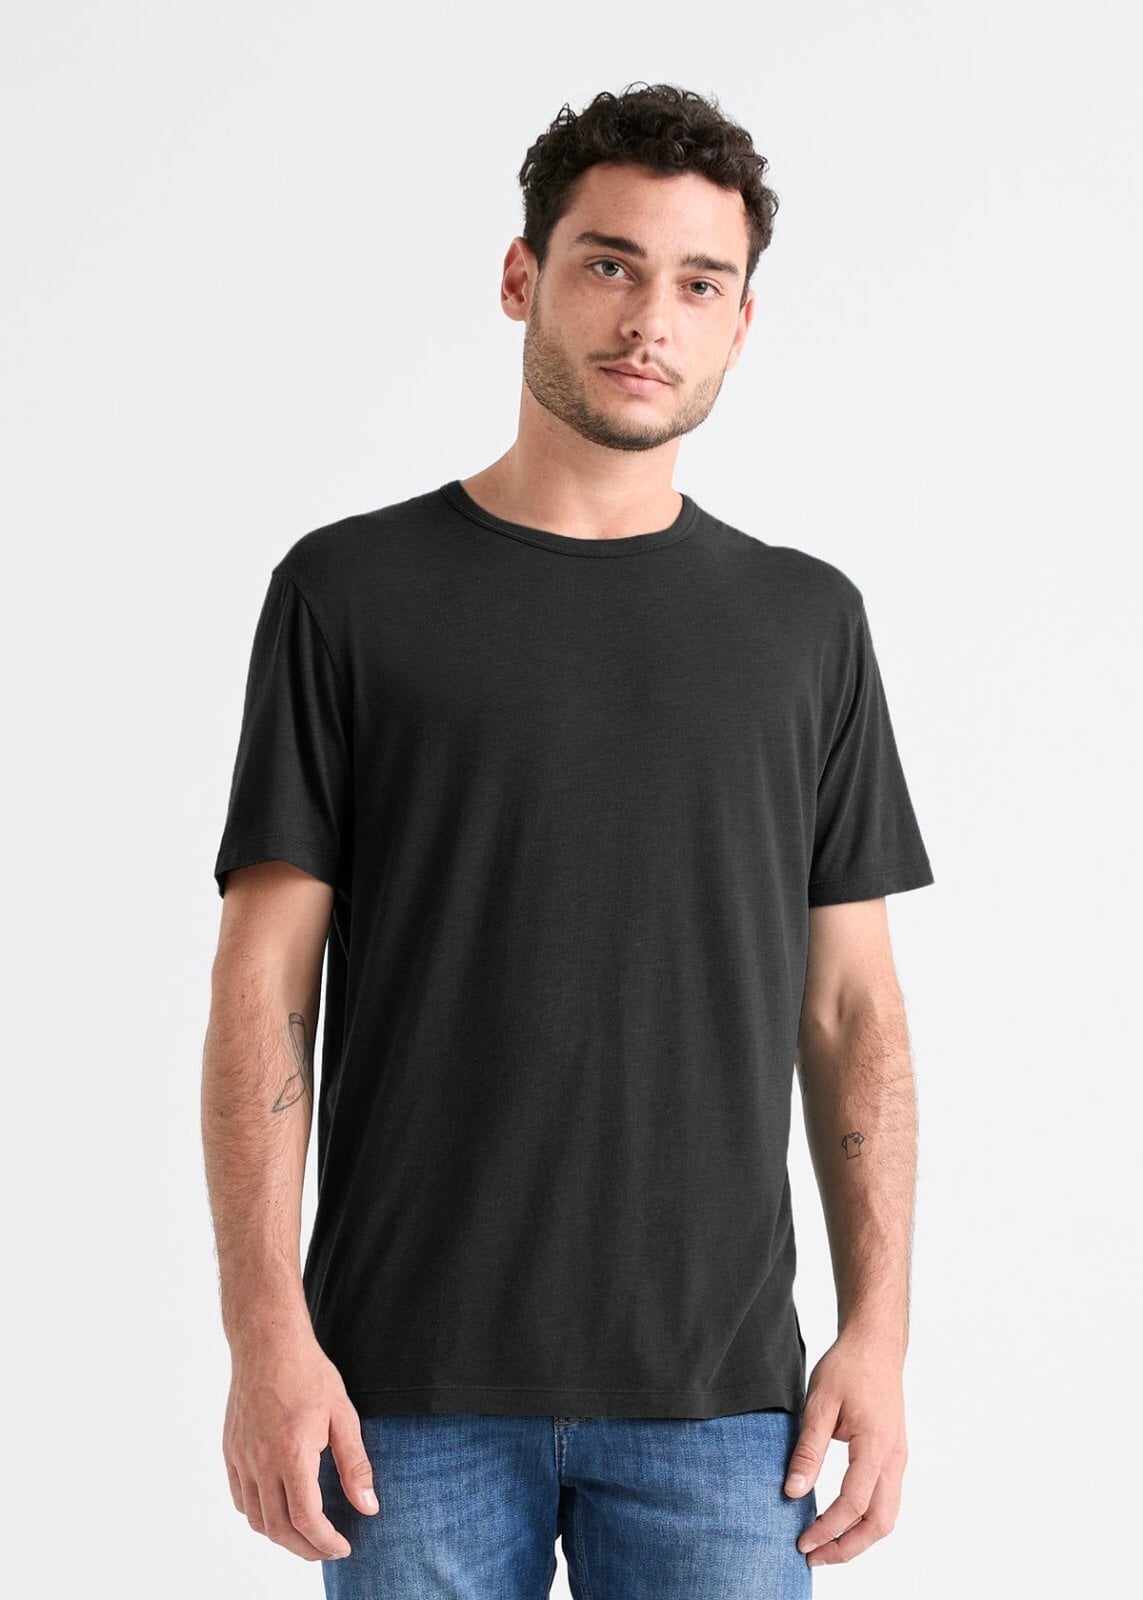 mens 100% Pima cotton black t-shirt front